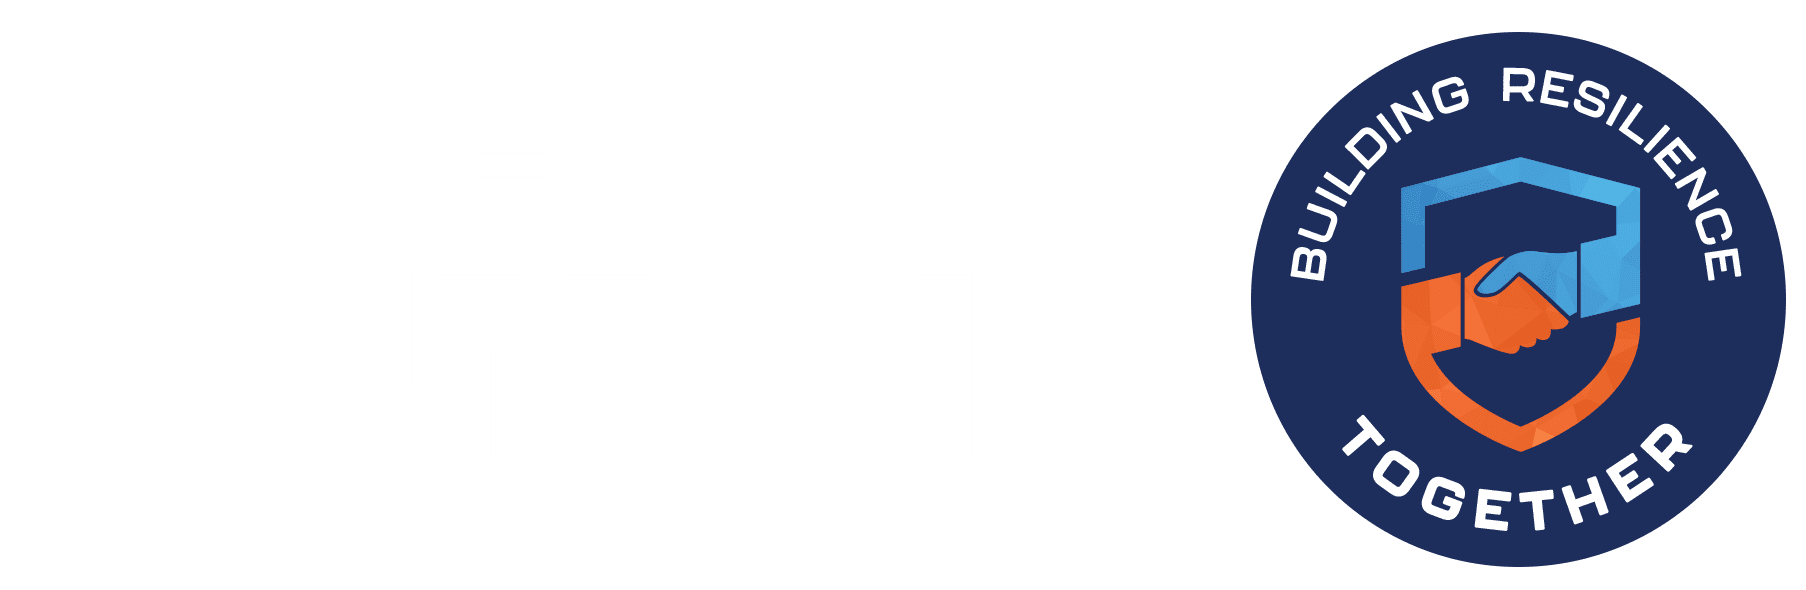 rave-summitt-2022-hero